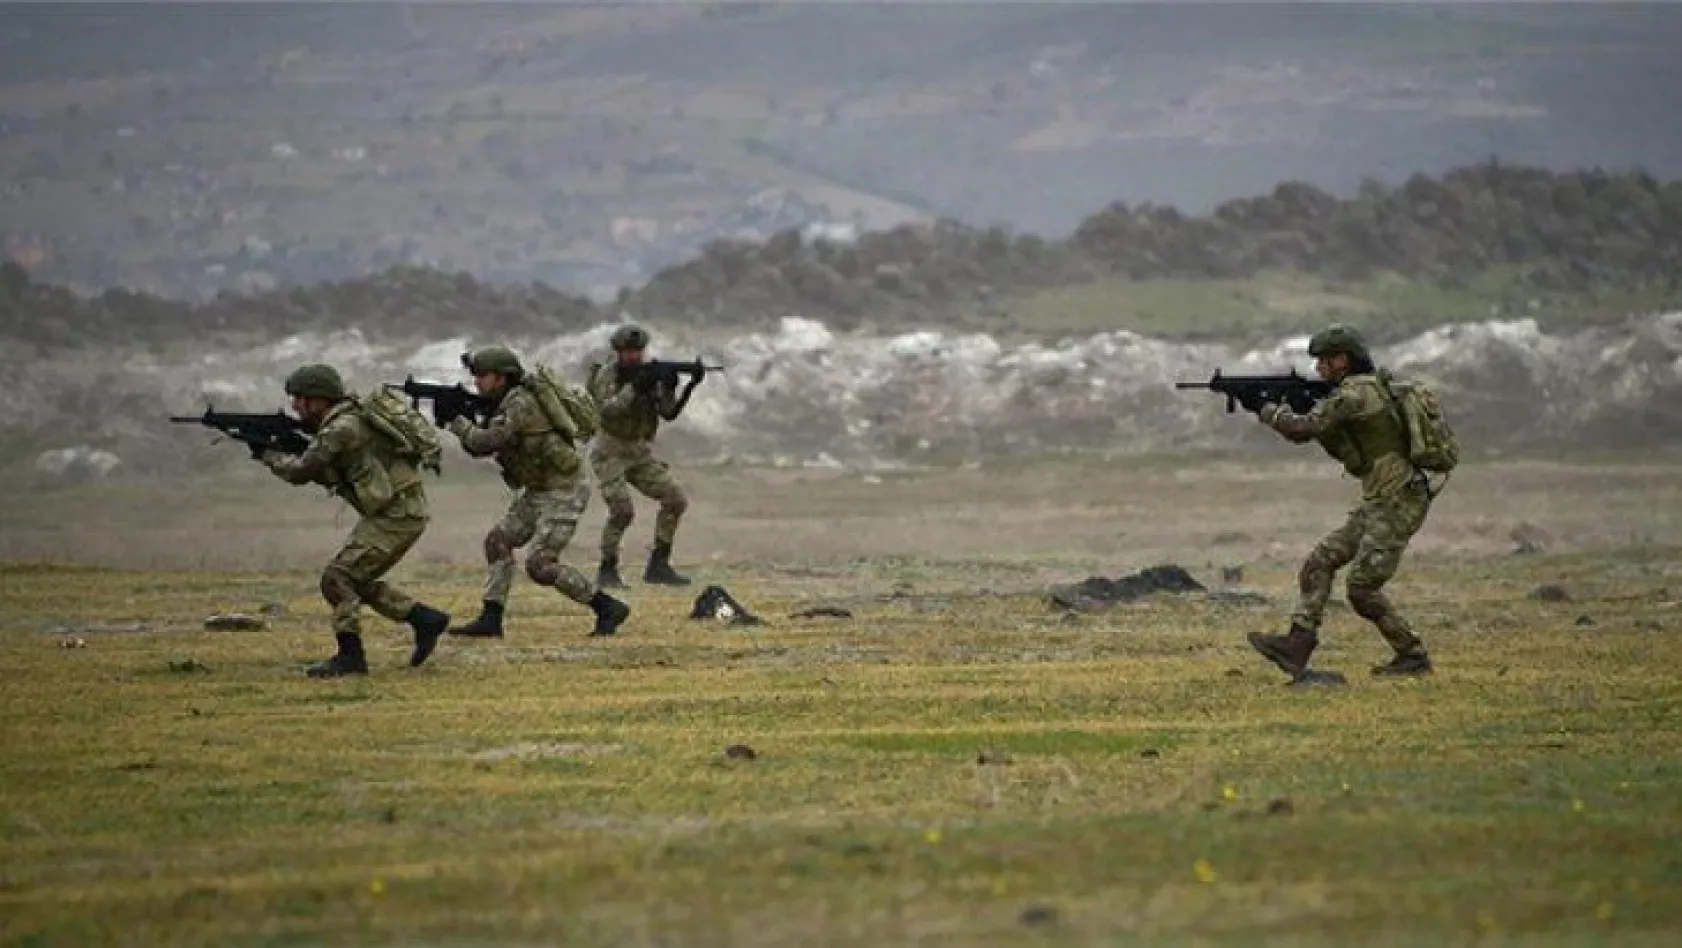 Suriye'de sıcak gelişmeler! Türk askeri harekete geçti...